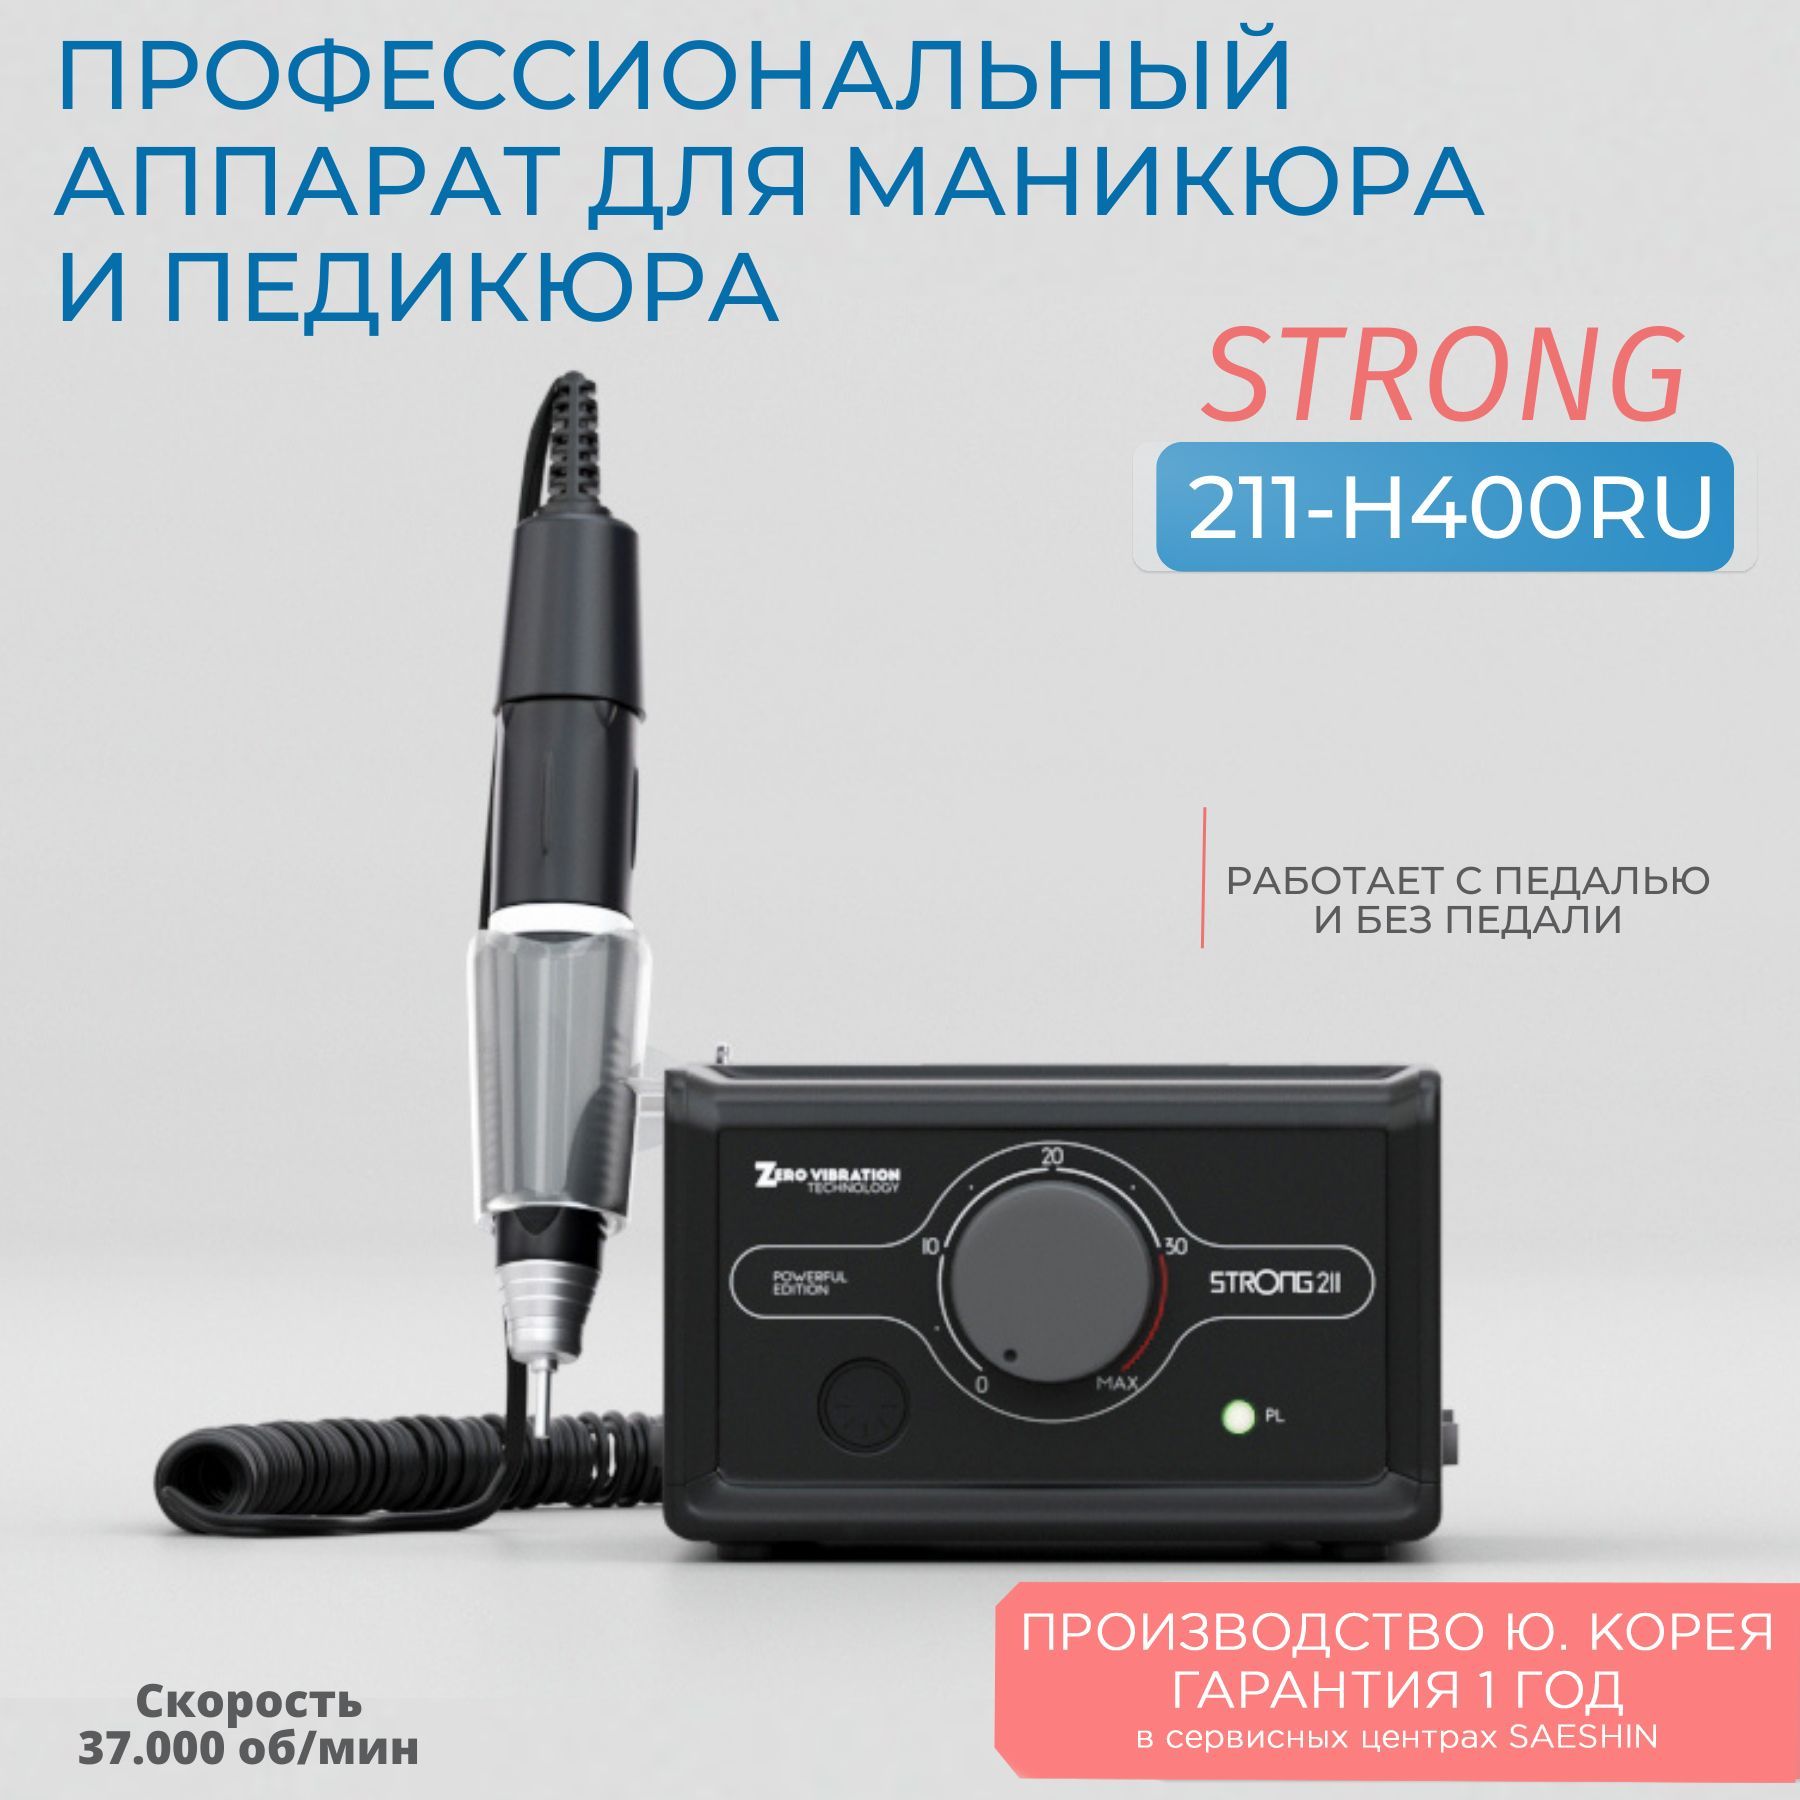 Аппарат для маникюра и педикюра Strong 211 H400RU без педали стихотворения на русском и английском языках